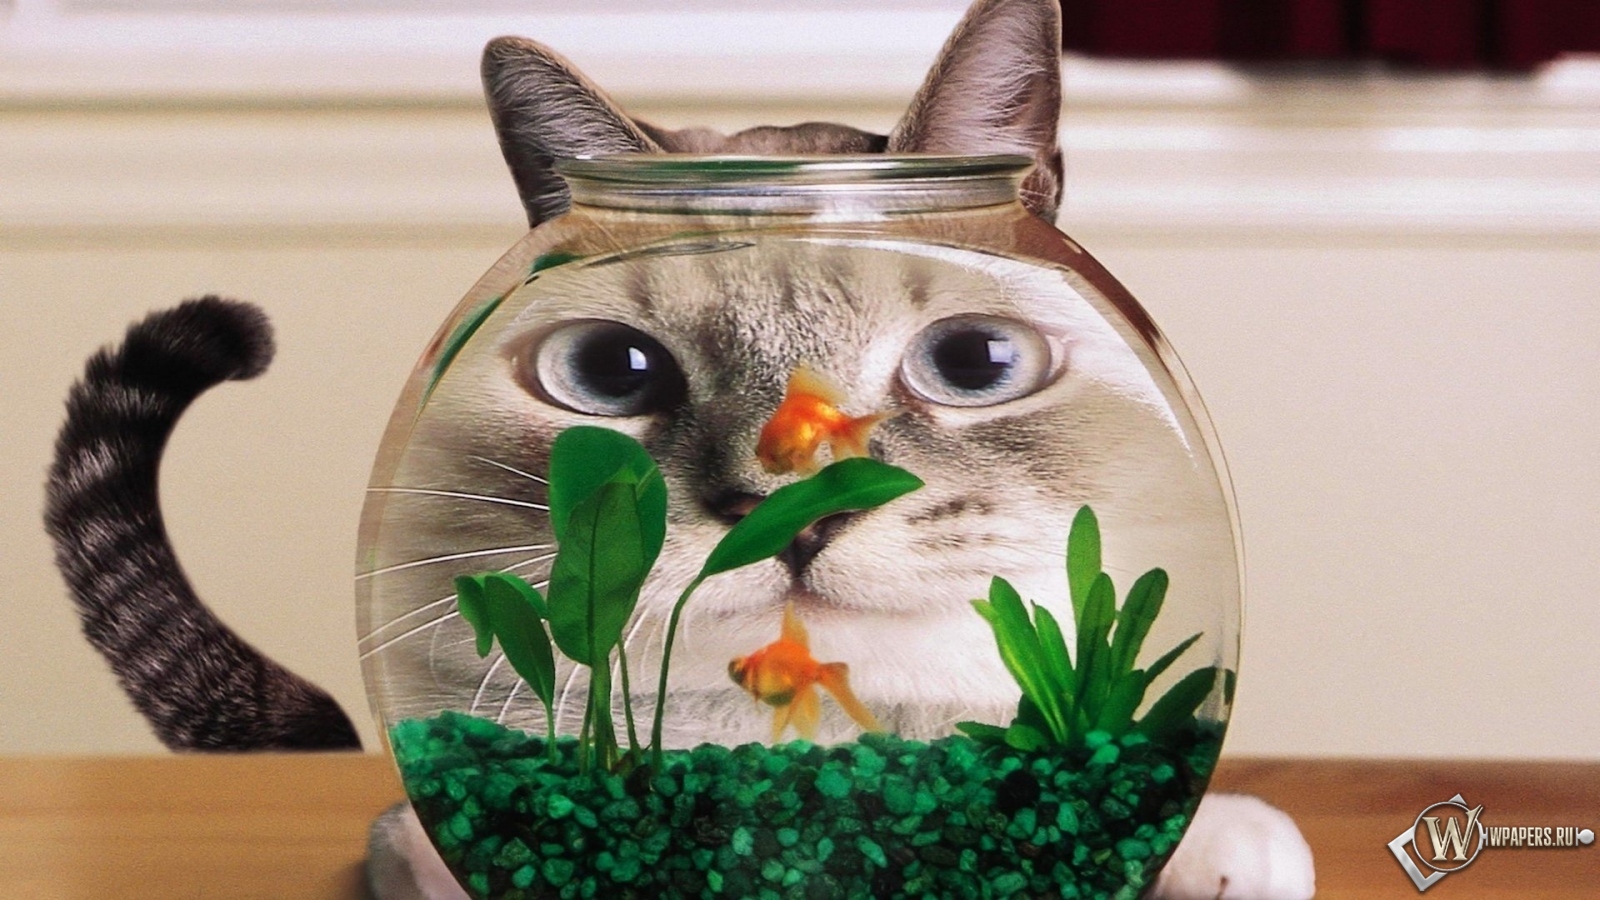 Кот в аквариуме 1600x900